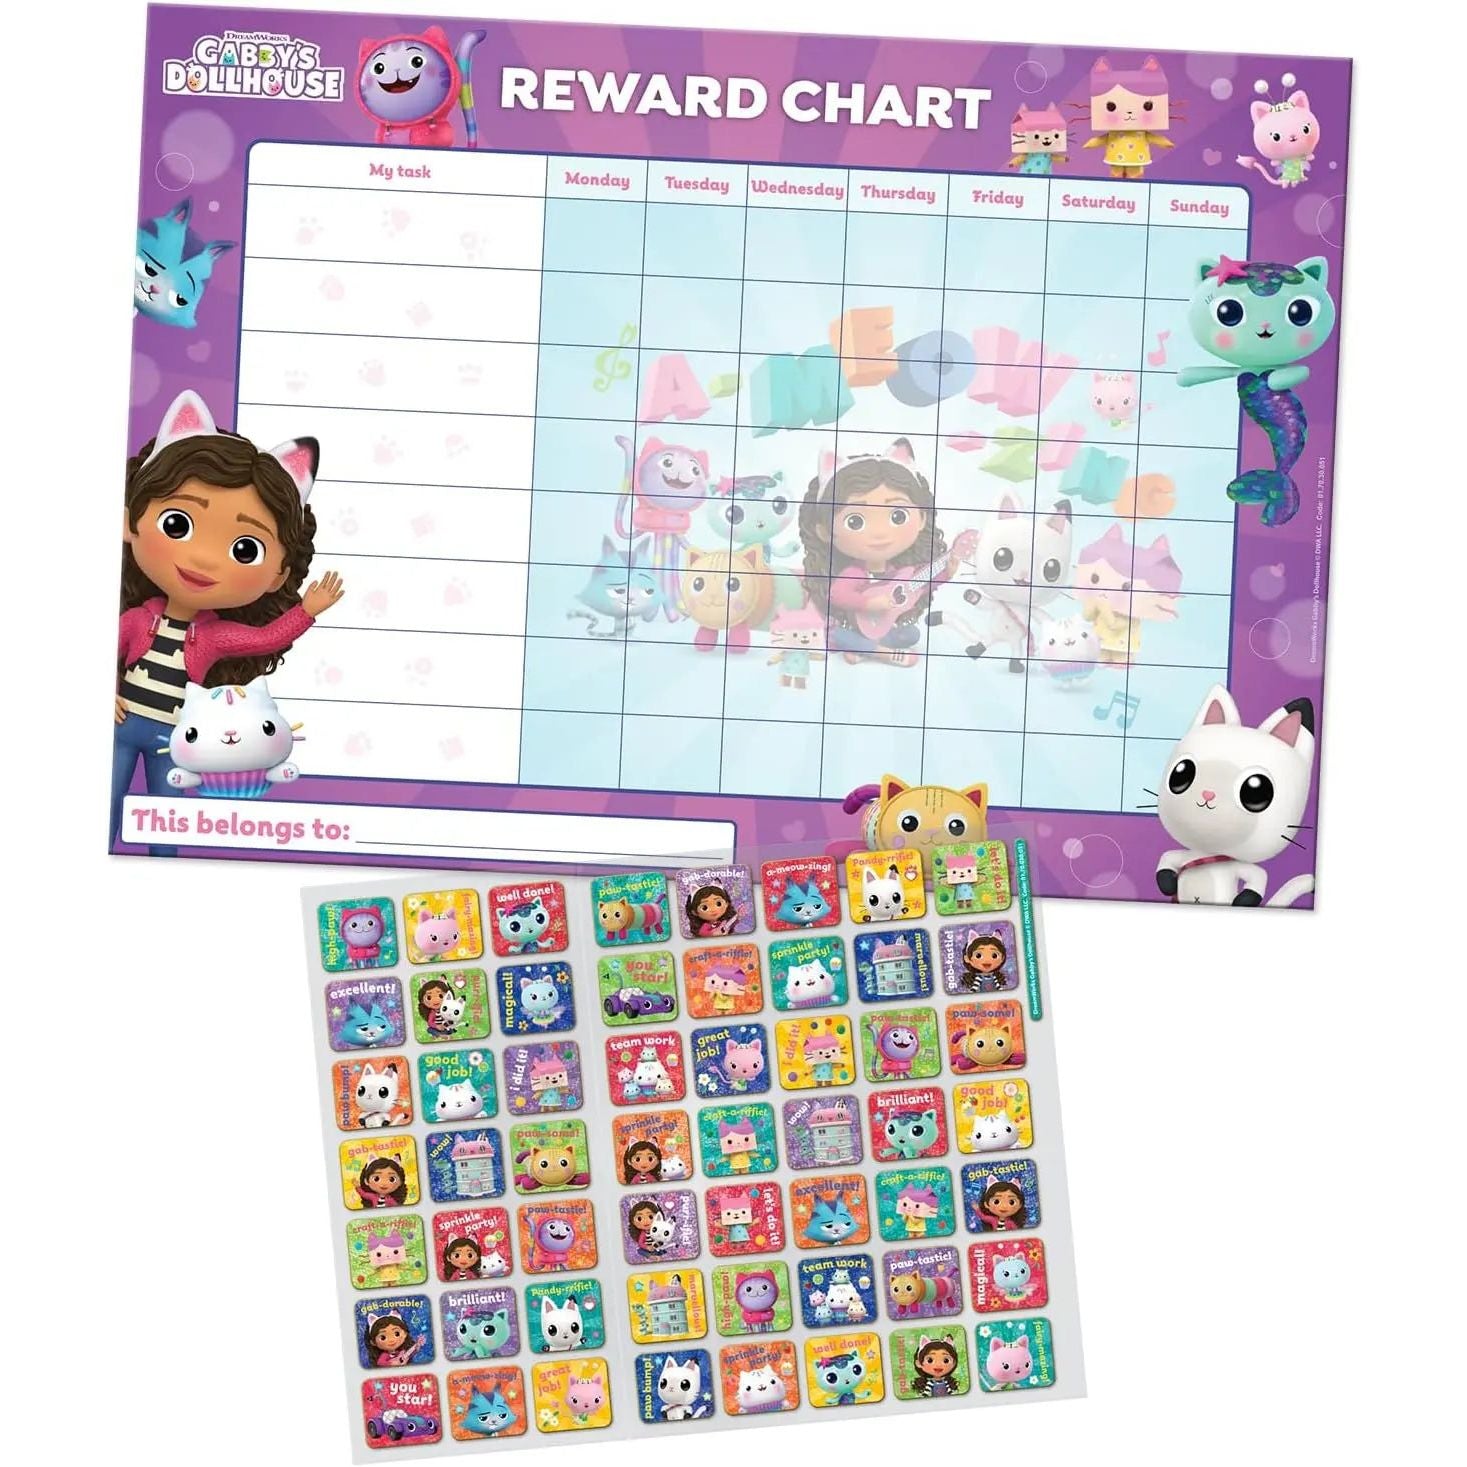 Gabby's Dollhouse Everyday Reward Chart with Stickers Gabby's Dollhouse